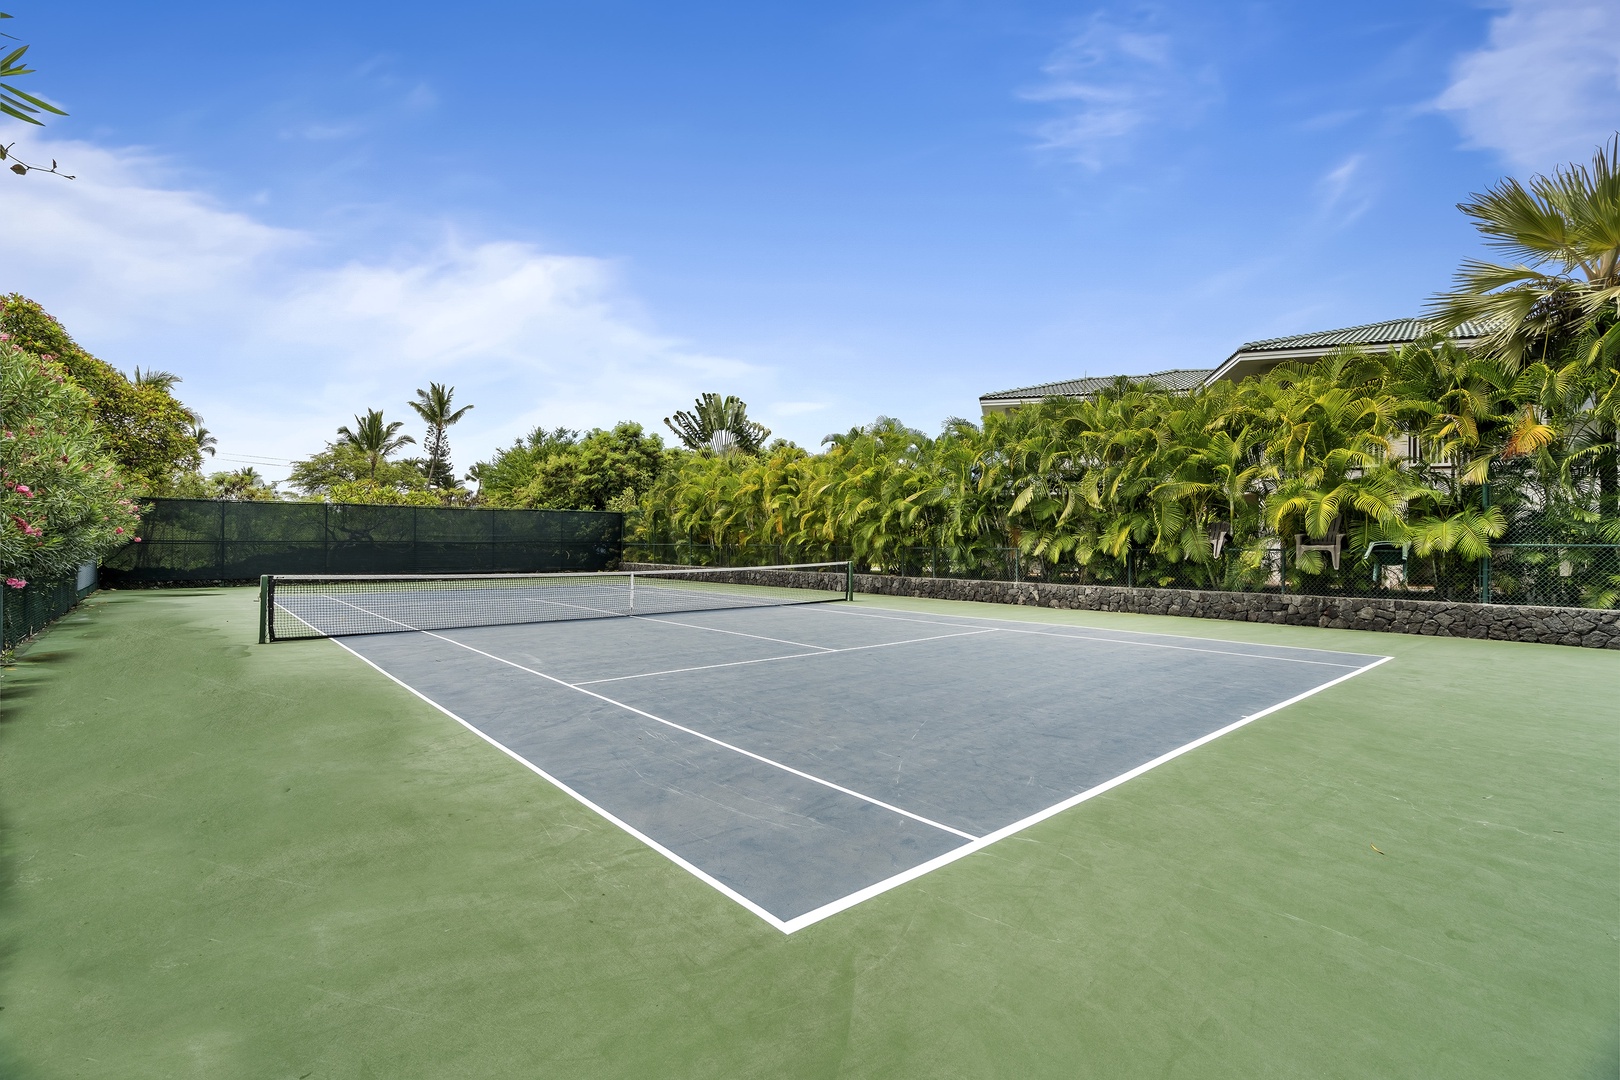 Kailua Kona Vacation Rentals, Ali'i Point #7 - Alii Point Tennis